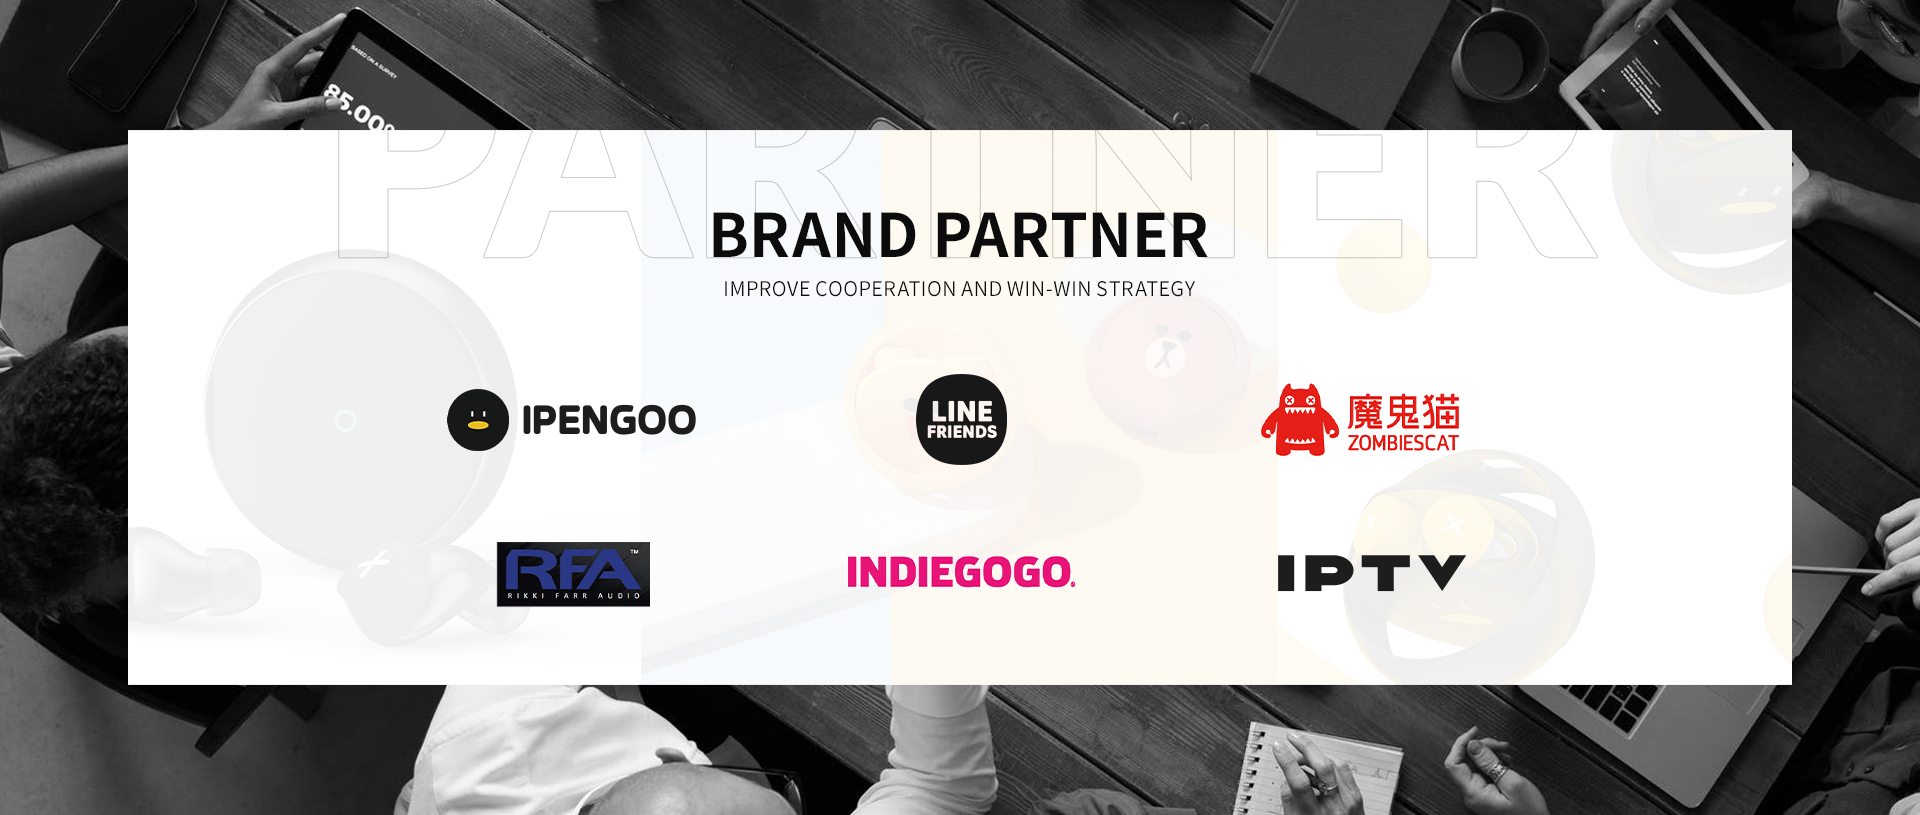 Brand Partner